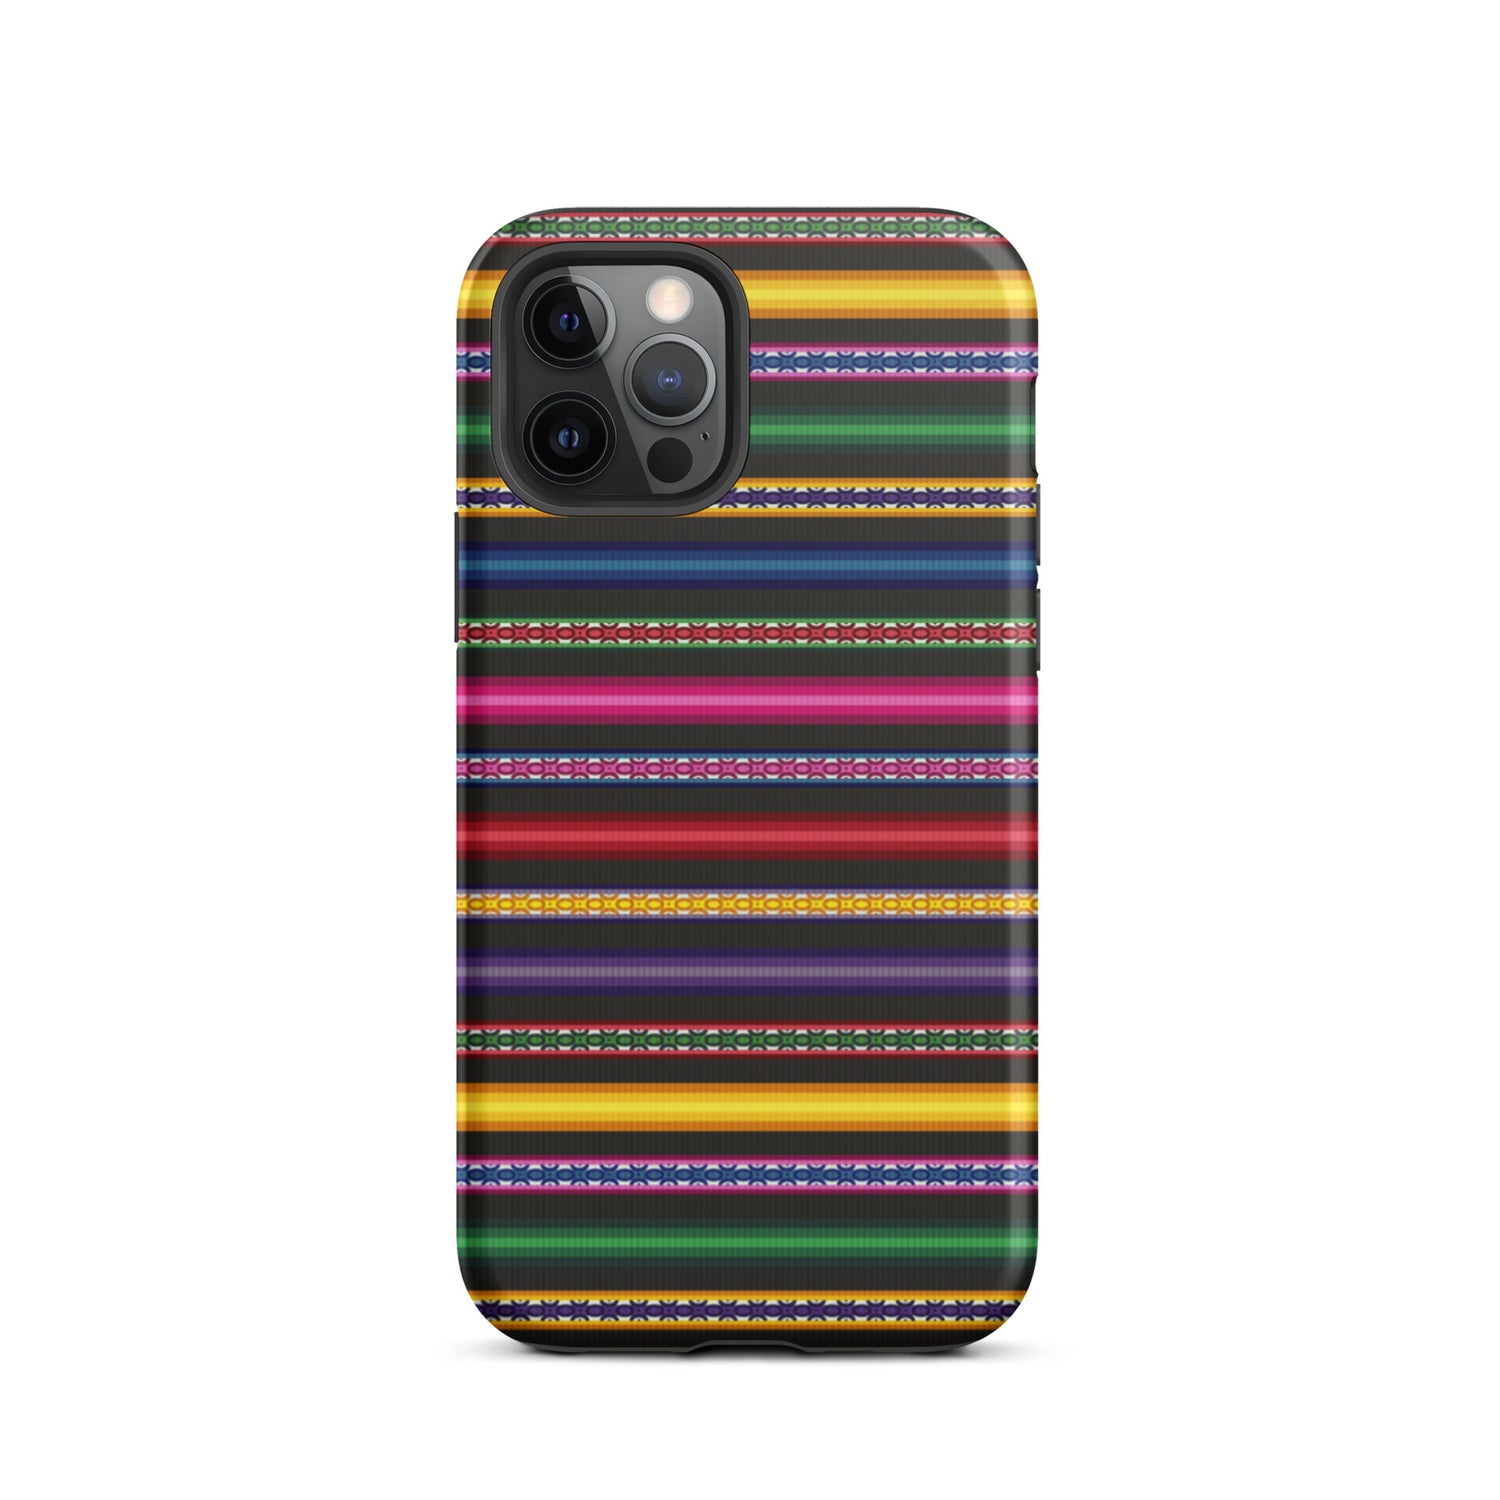 Peruvian Tough iPhone 12 pro case